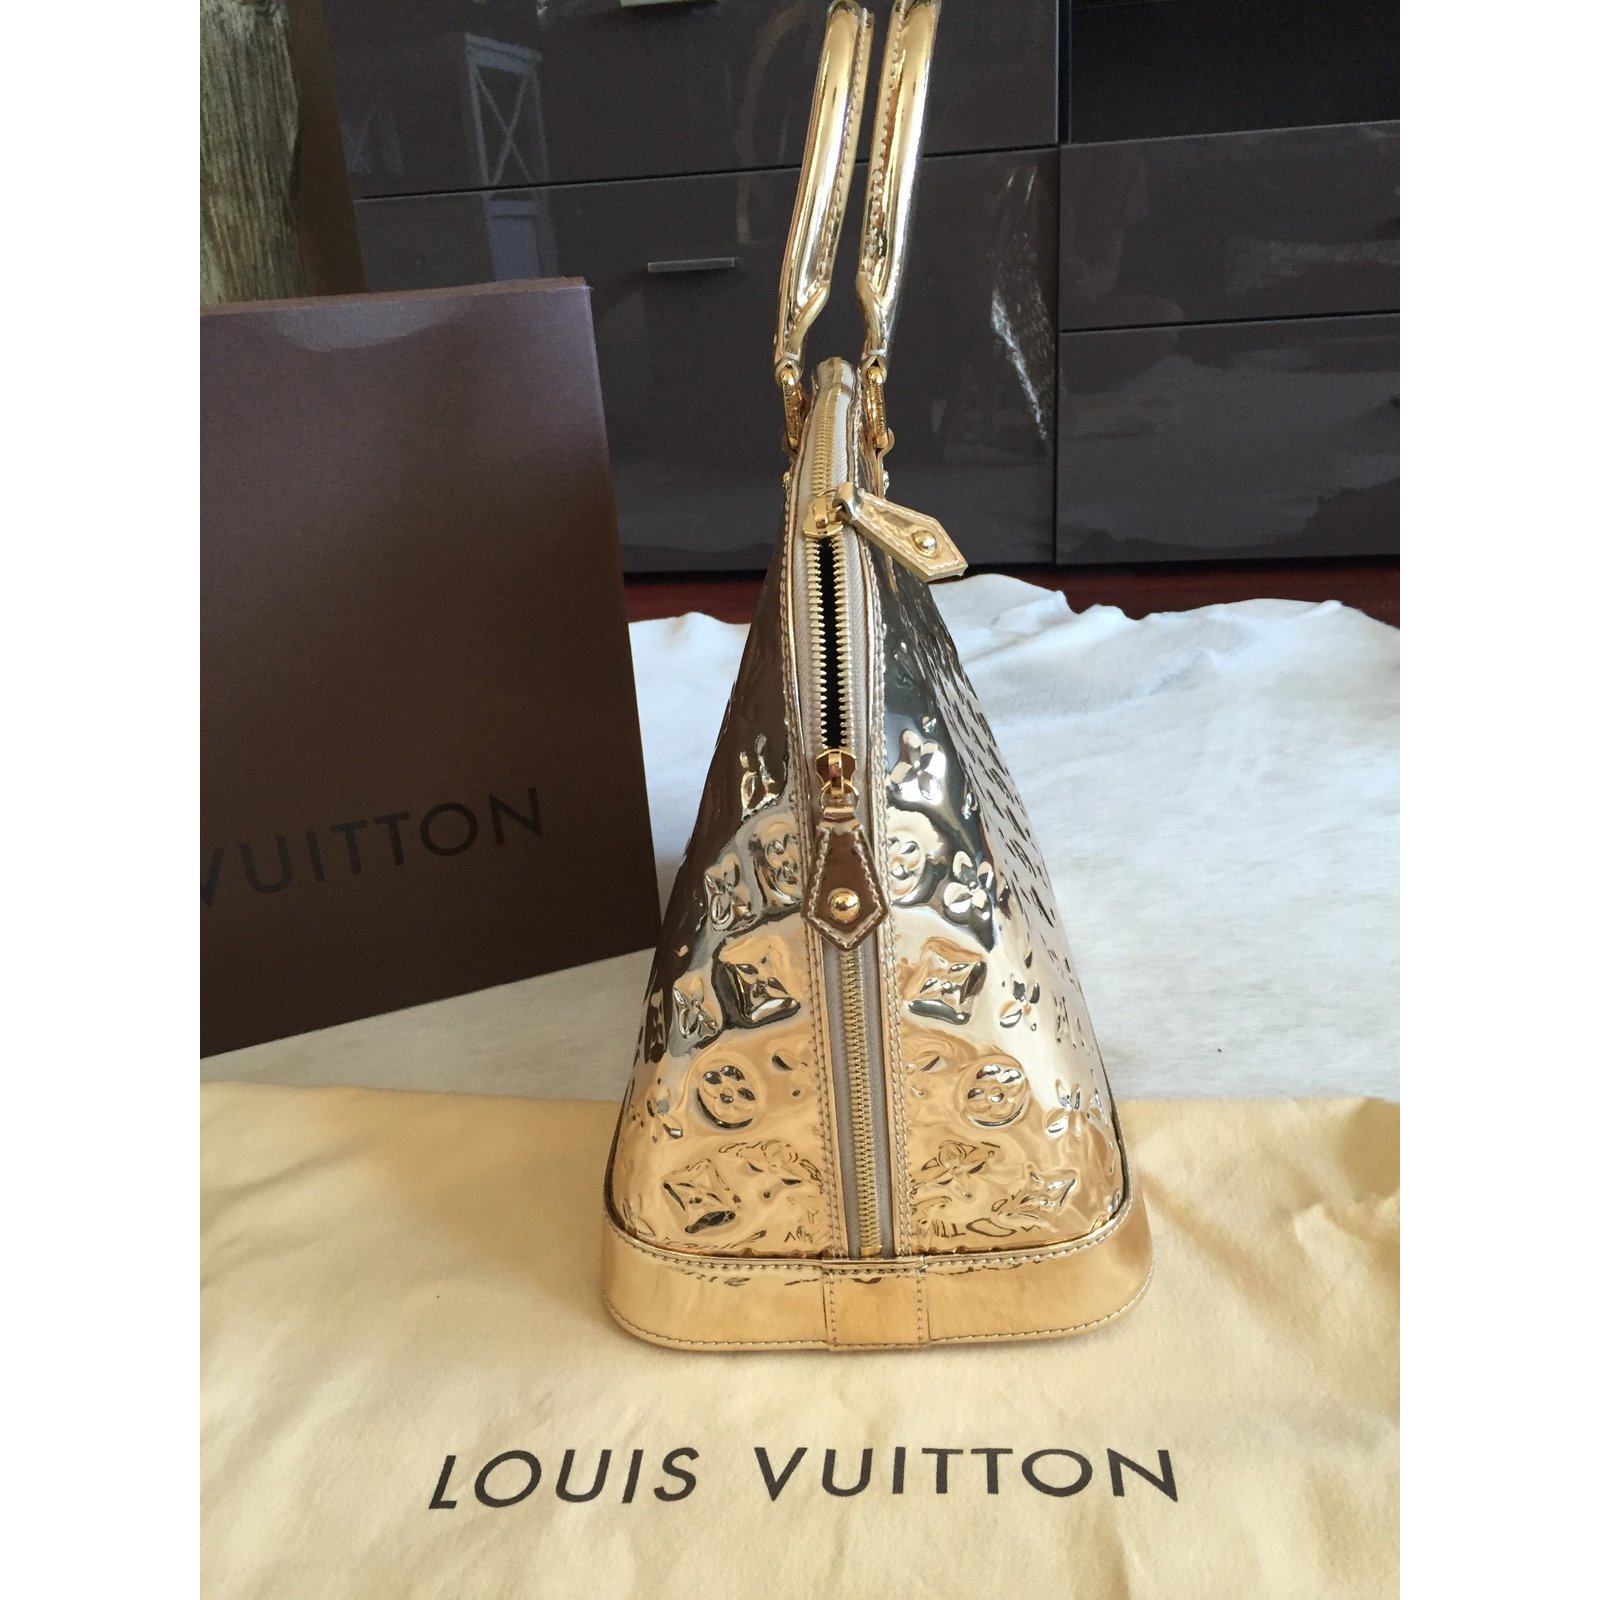 Louis Vuitton ALMA MM MIROIR DORE GOLD - SPECIAL EDITION Golden